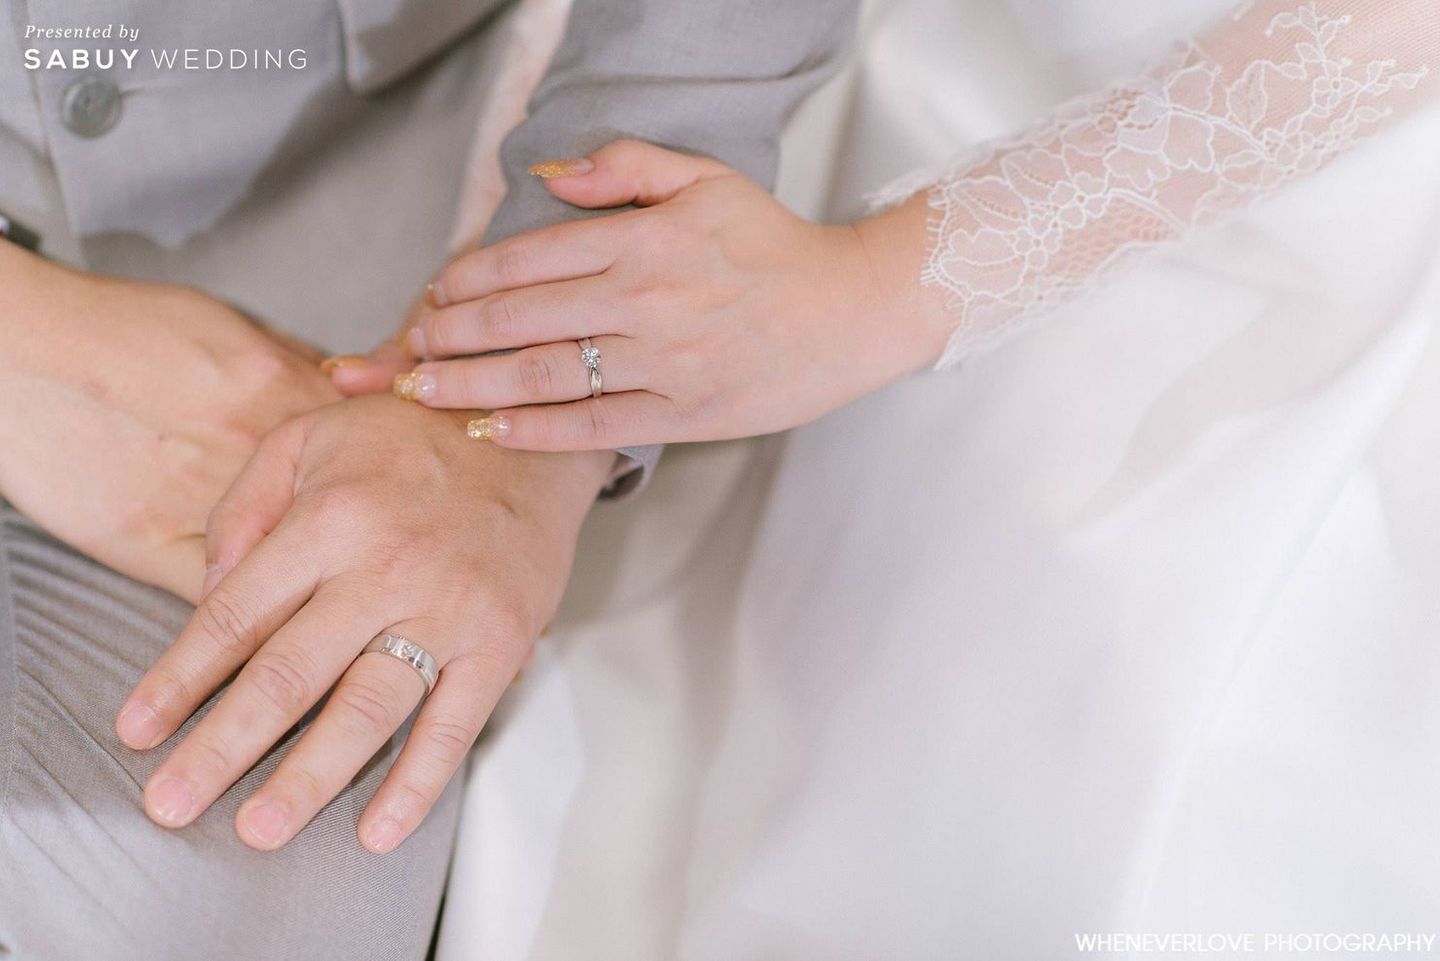 งานหมั้น,แต่งงาน,แหวนแต่งงาน รีวิวงานแต่งละมุนใจ ตกแต่งสดใส ใช้ของ DIY สุดเก๋ @สยามสมาคม